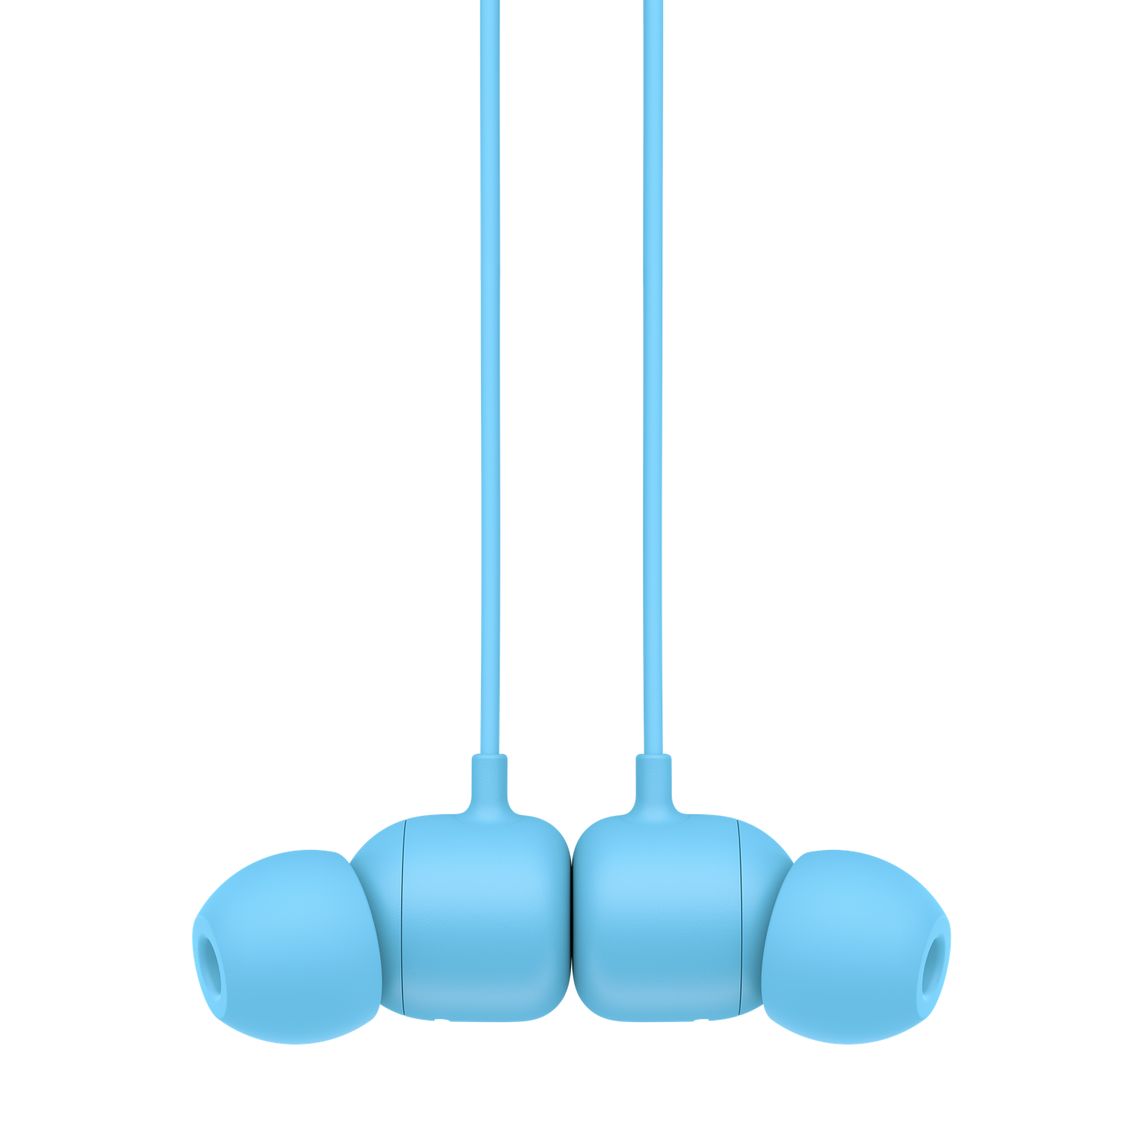  - Audifono In Ear Wireless Flex Beats / Azul 4